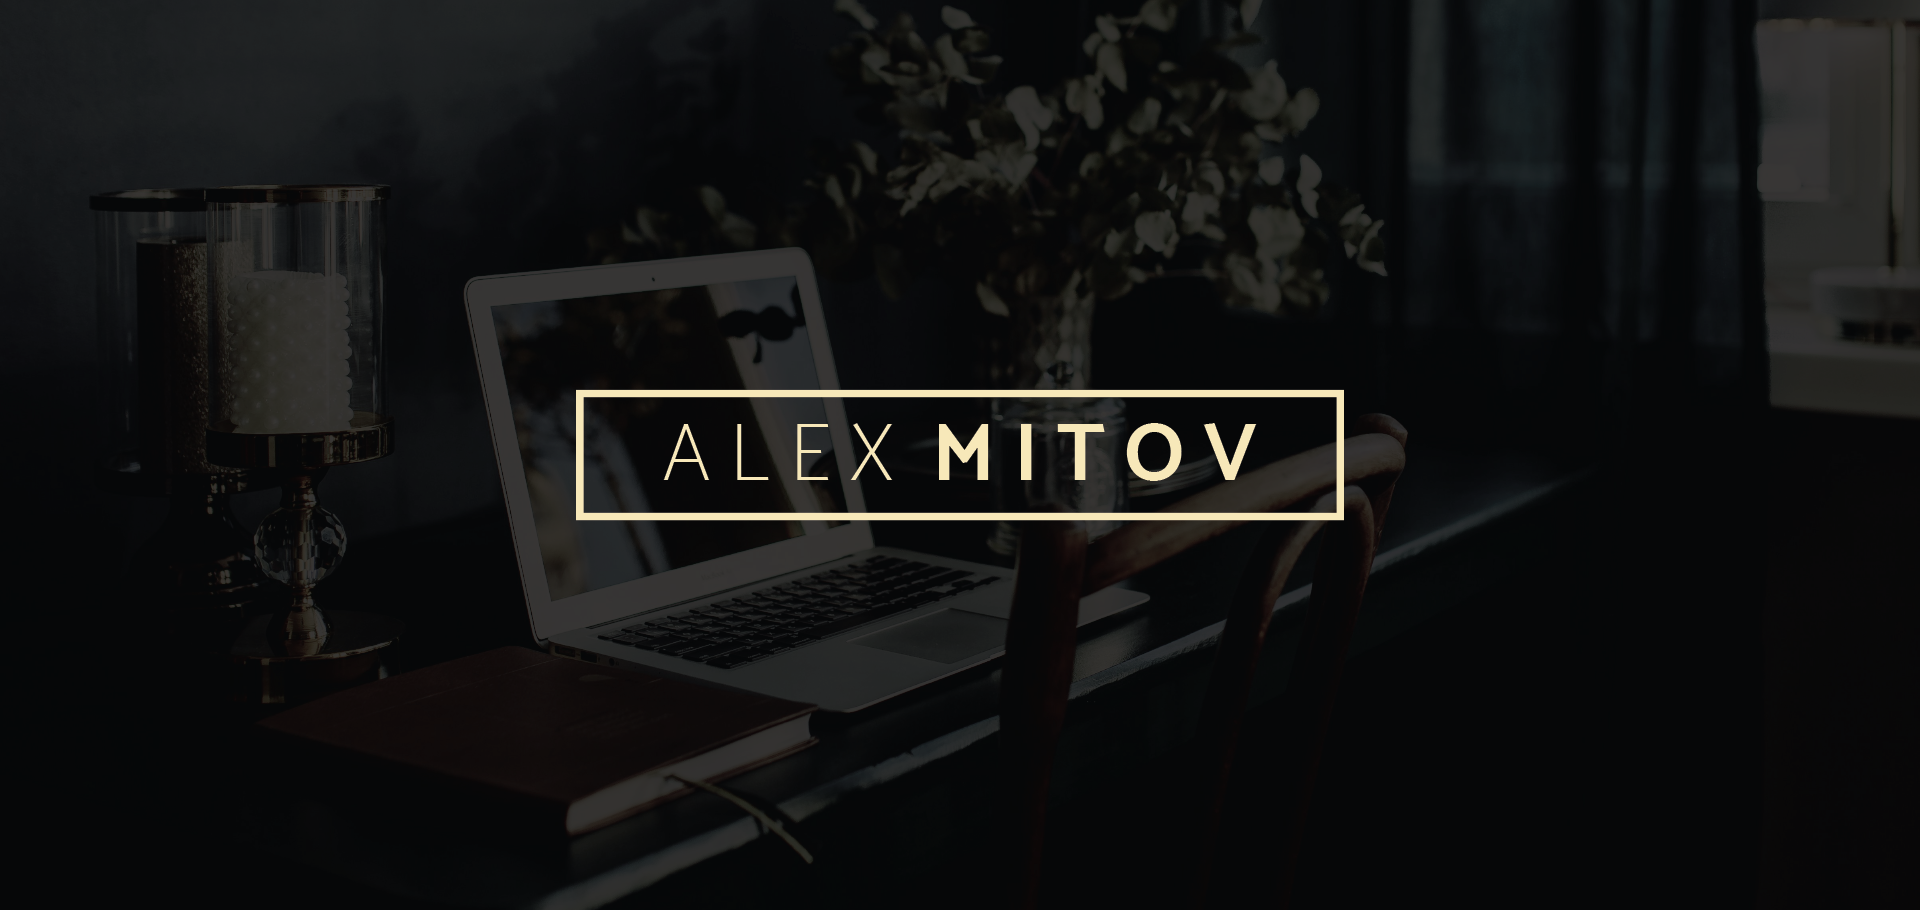 Alex Mitov Personal Brand Cover